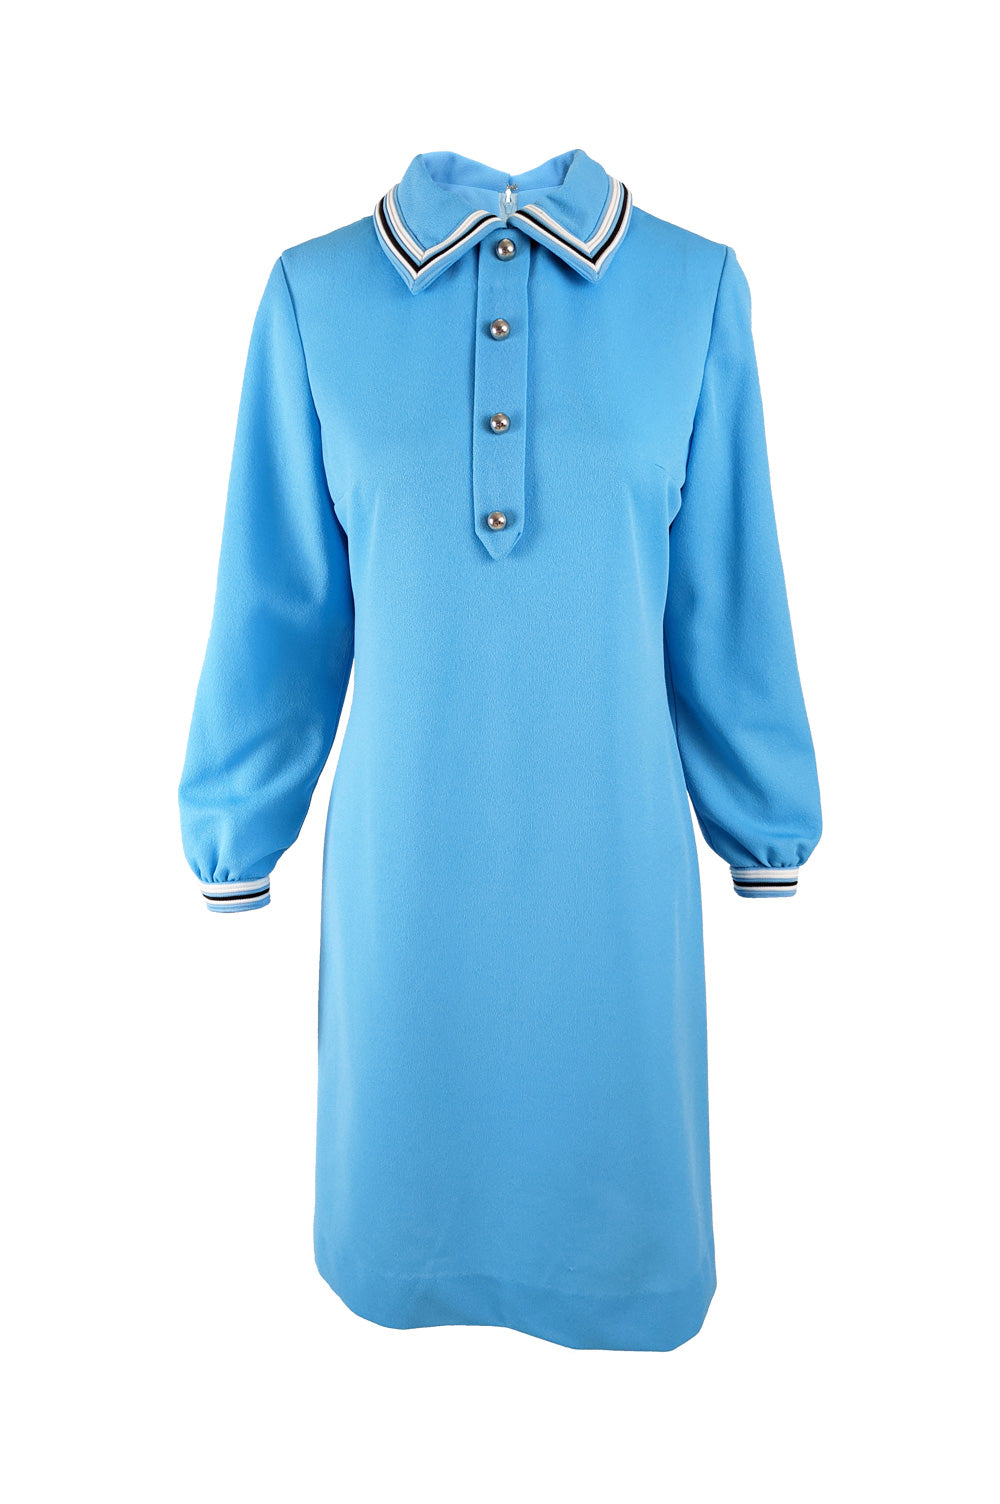 Vintage 1960s Blue Polyester Knit Shift Dress